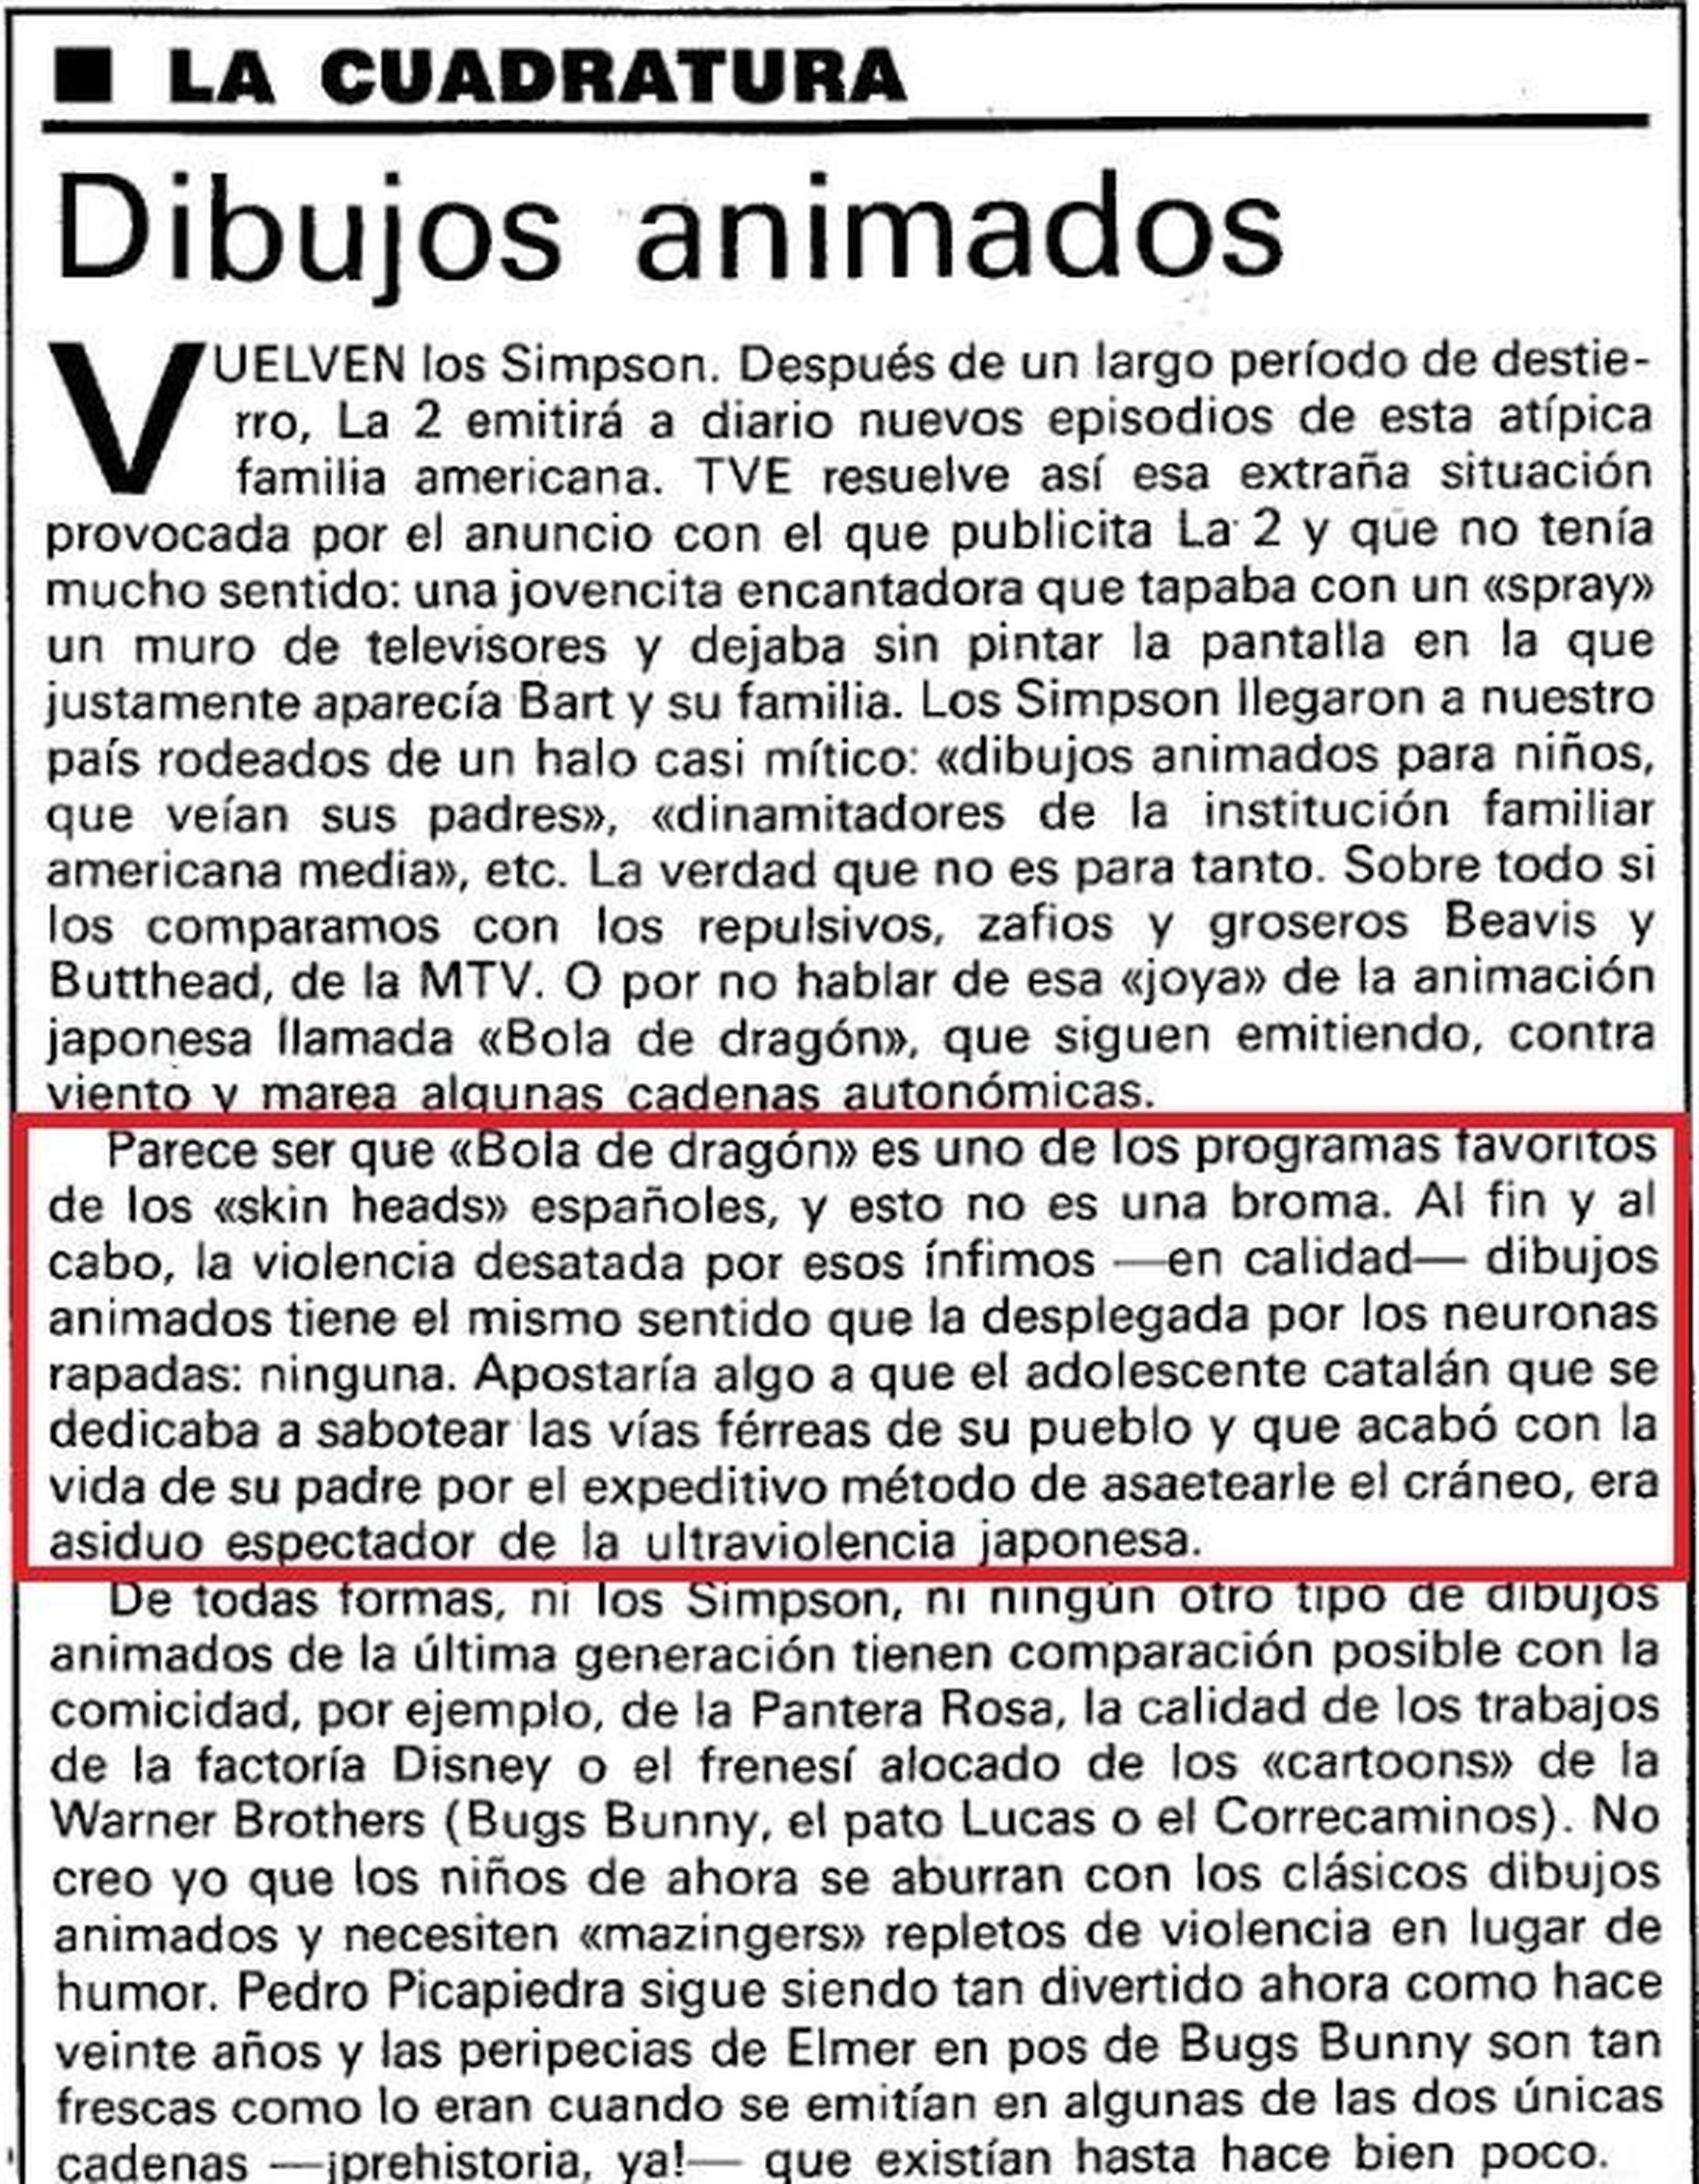 Así se atacaba Dragon Ball en los años 90 en España